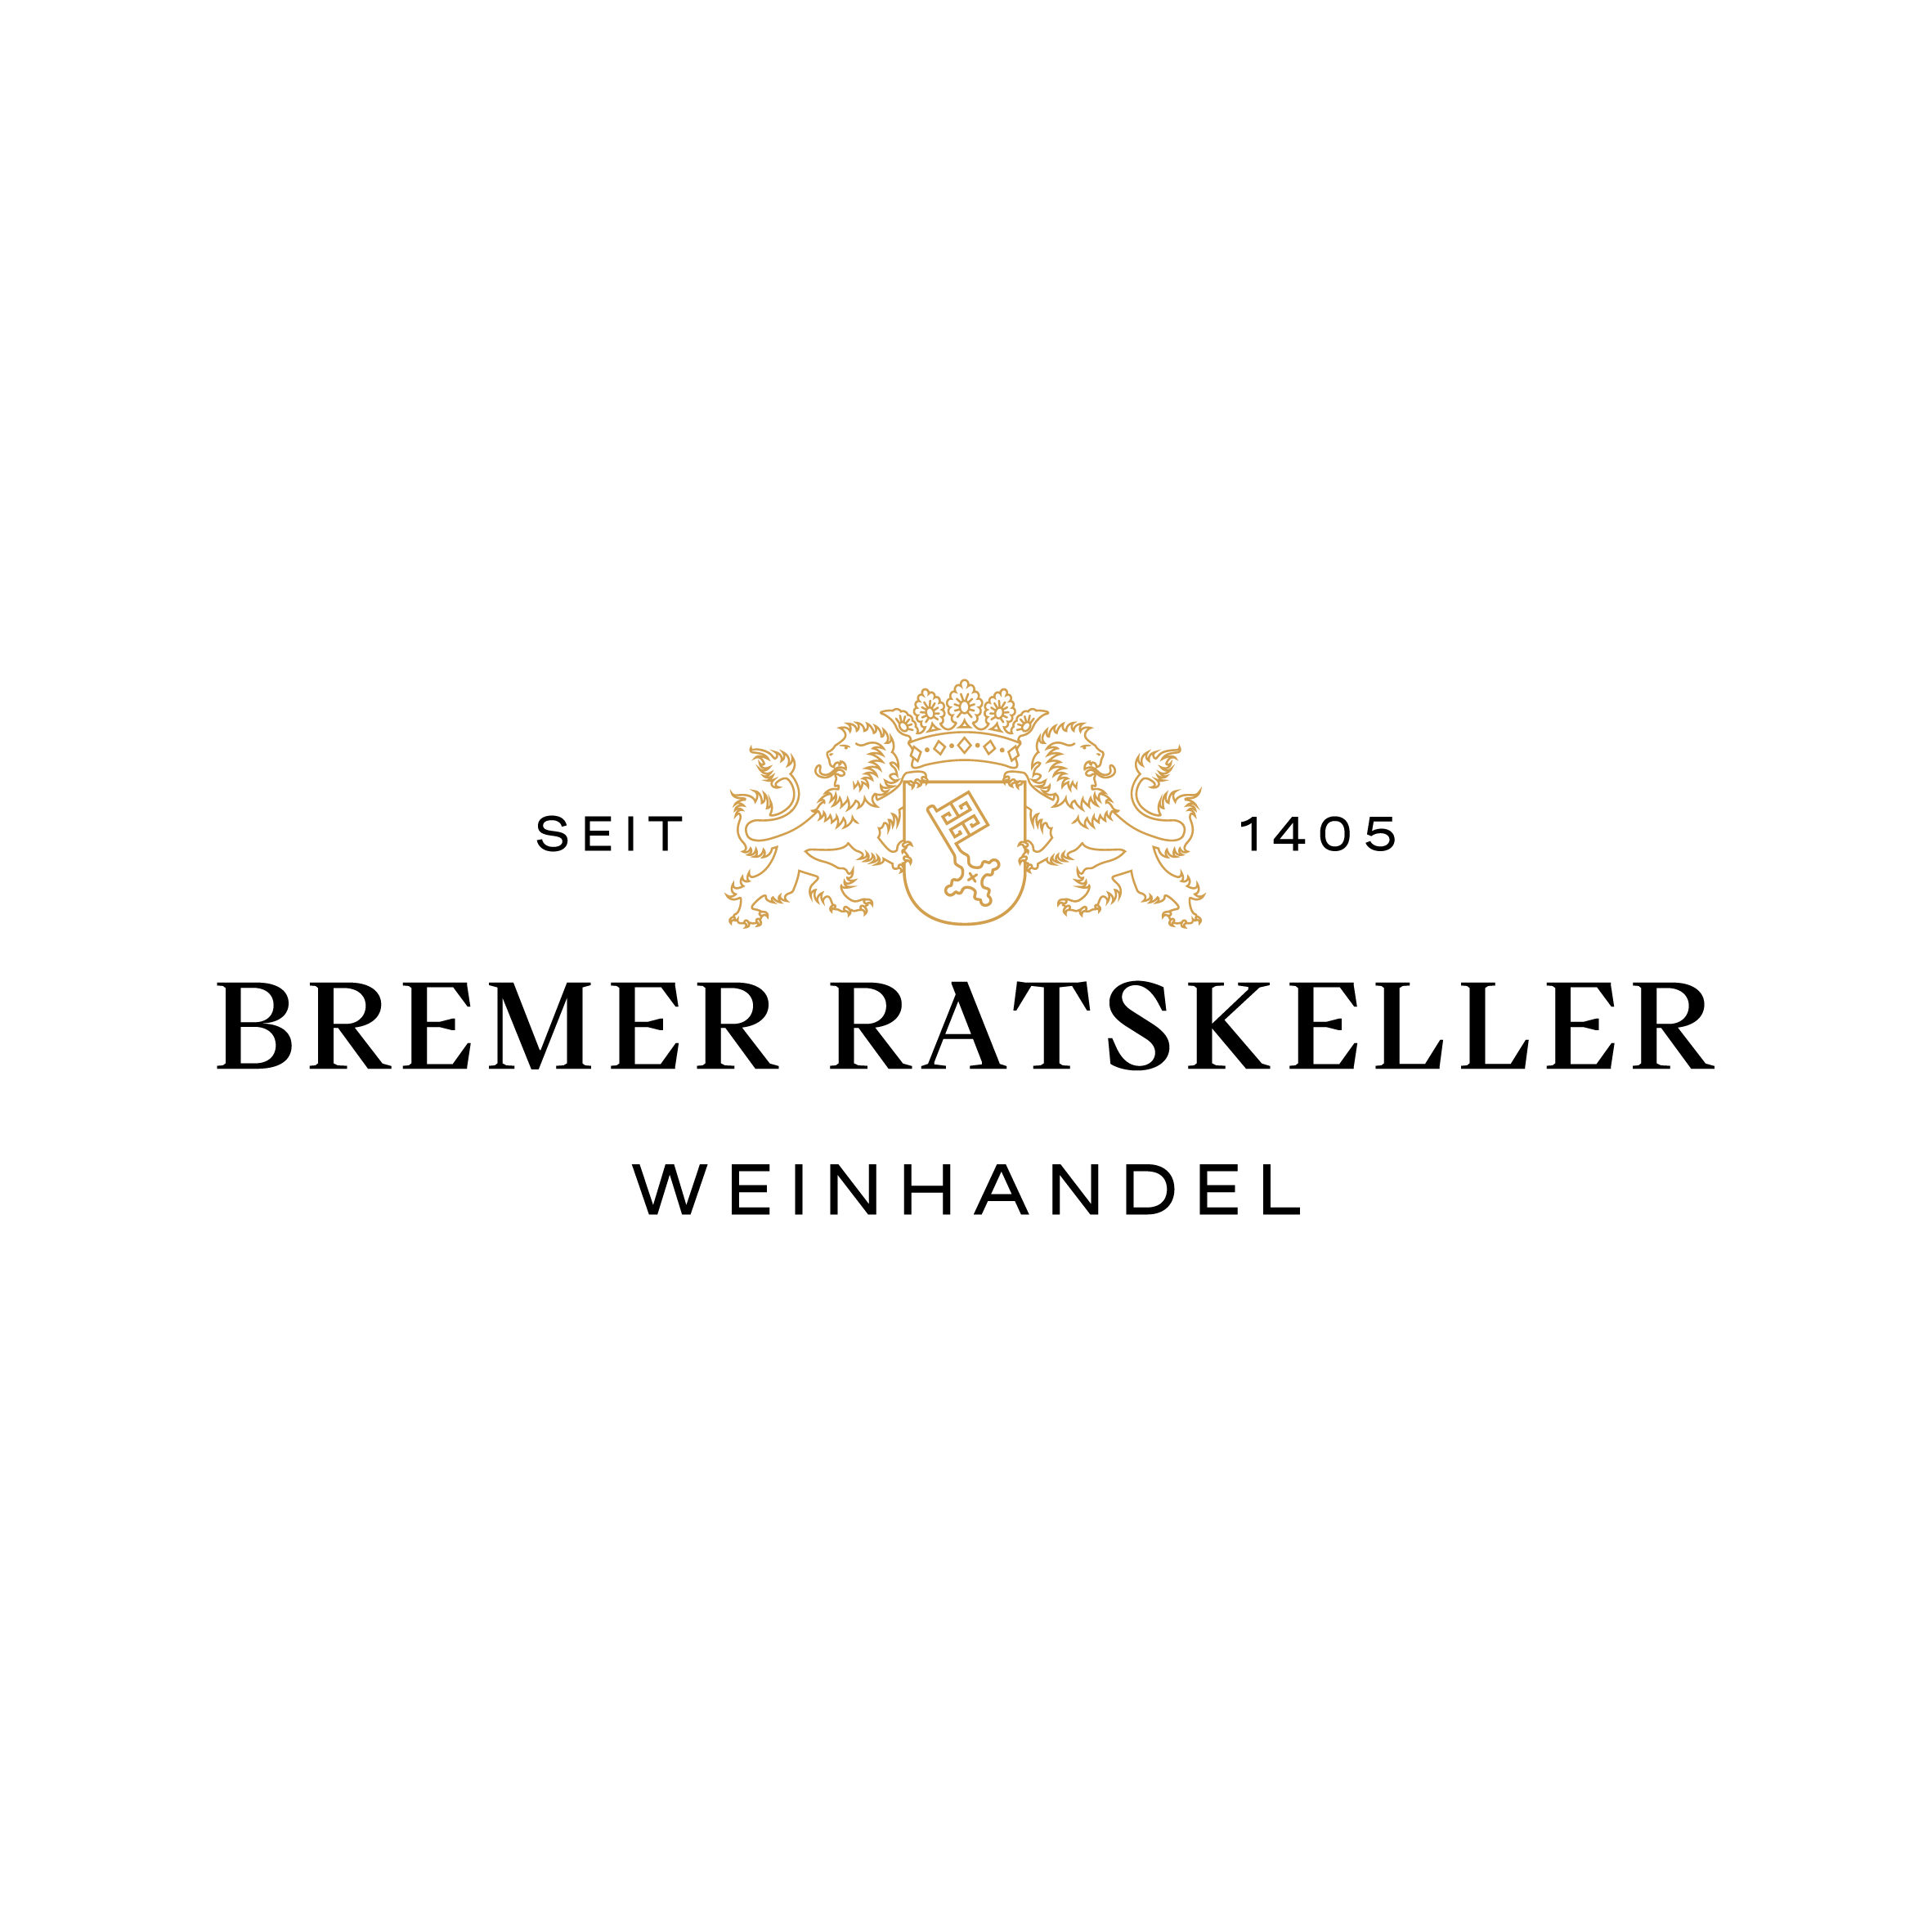 Bremer Ratskeller – Weinhandel seit 1405 - Wine Store - Bremen - 0421 337788 Germany | ShowMeLocal.com